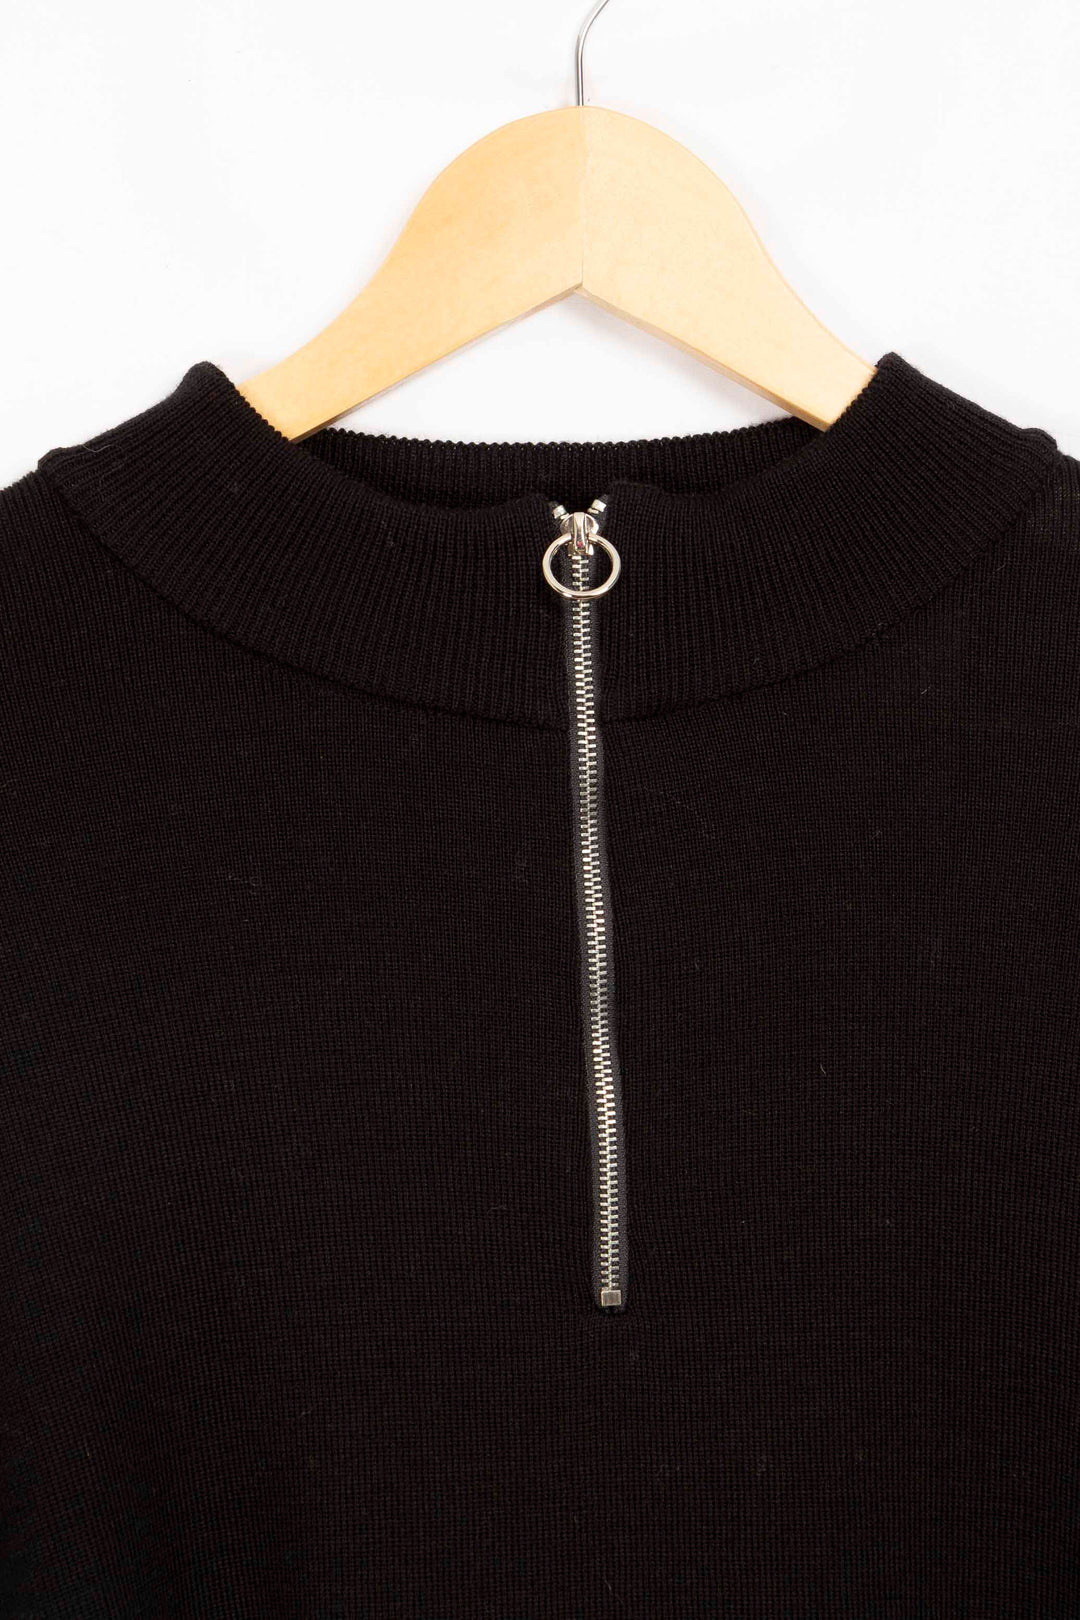 Schwarzer und Pariser Pullover – 42